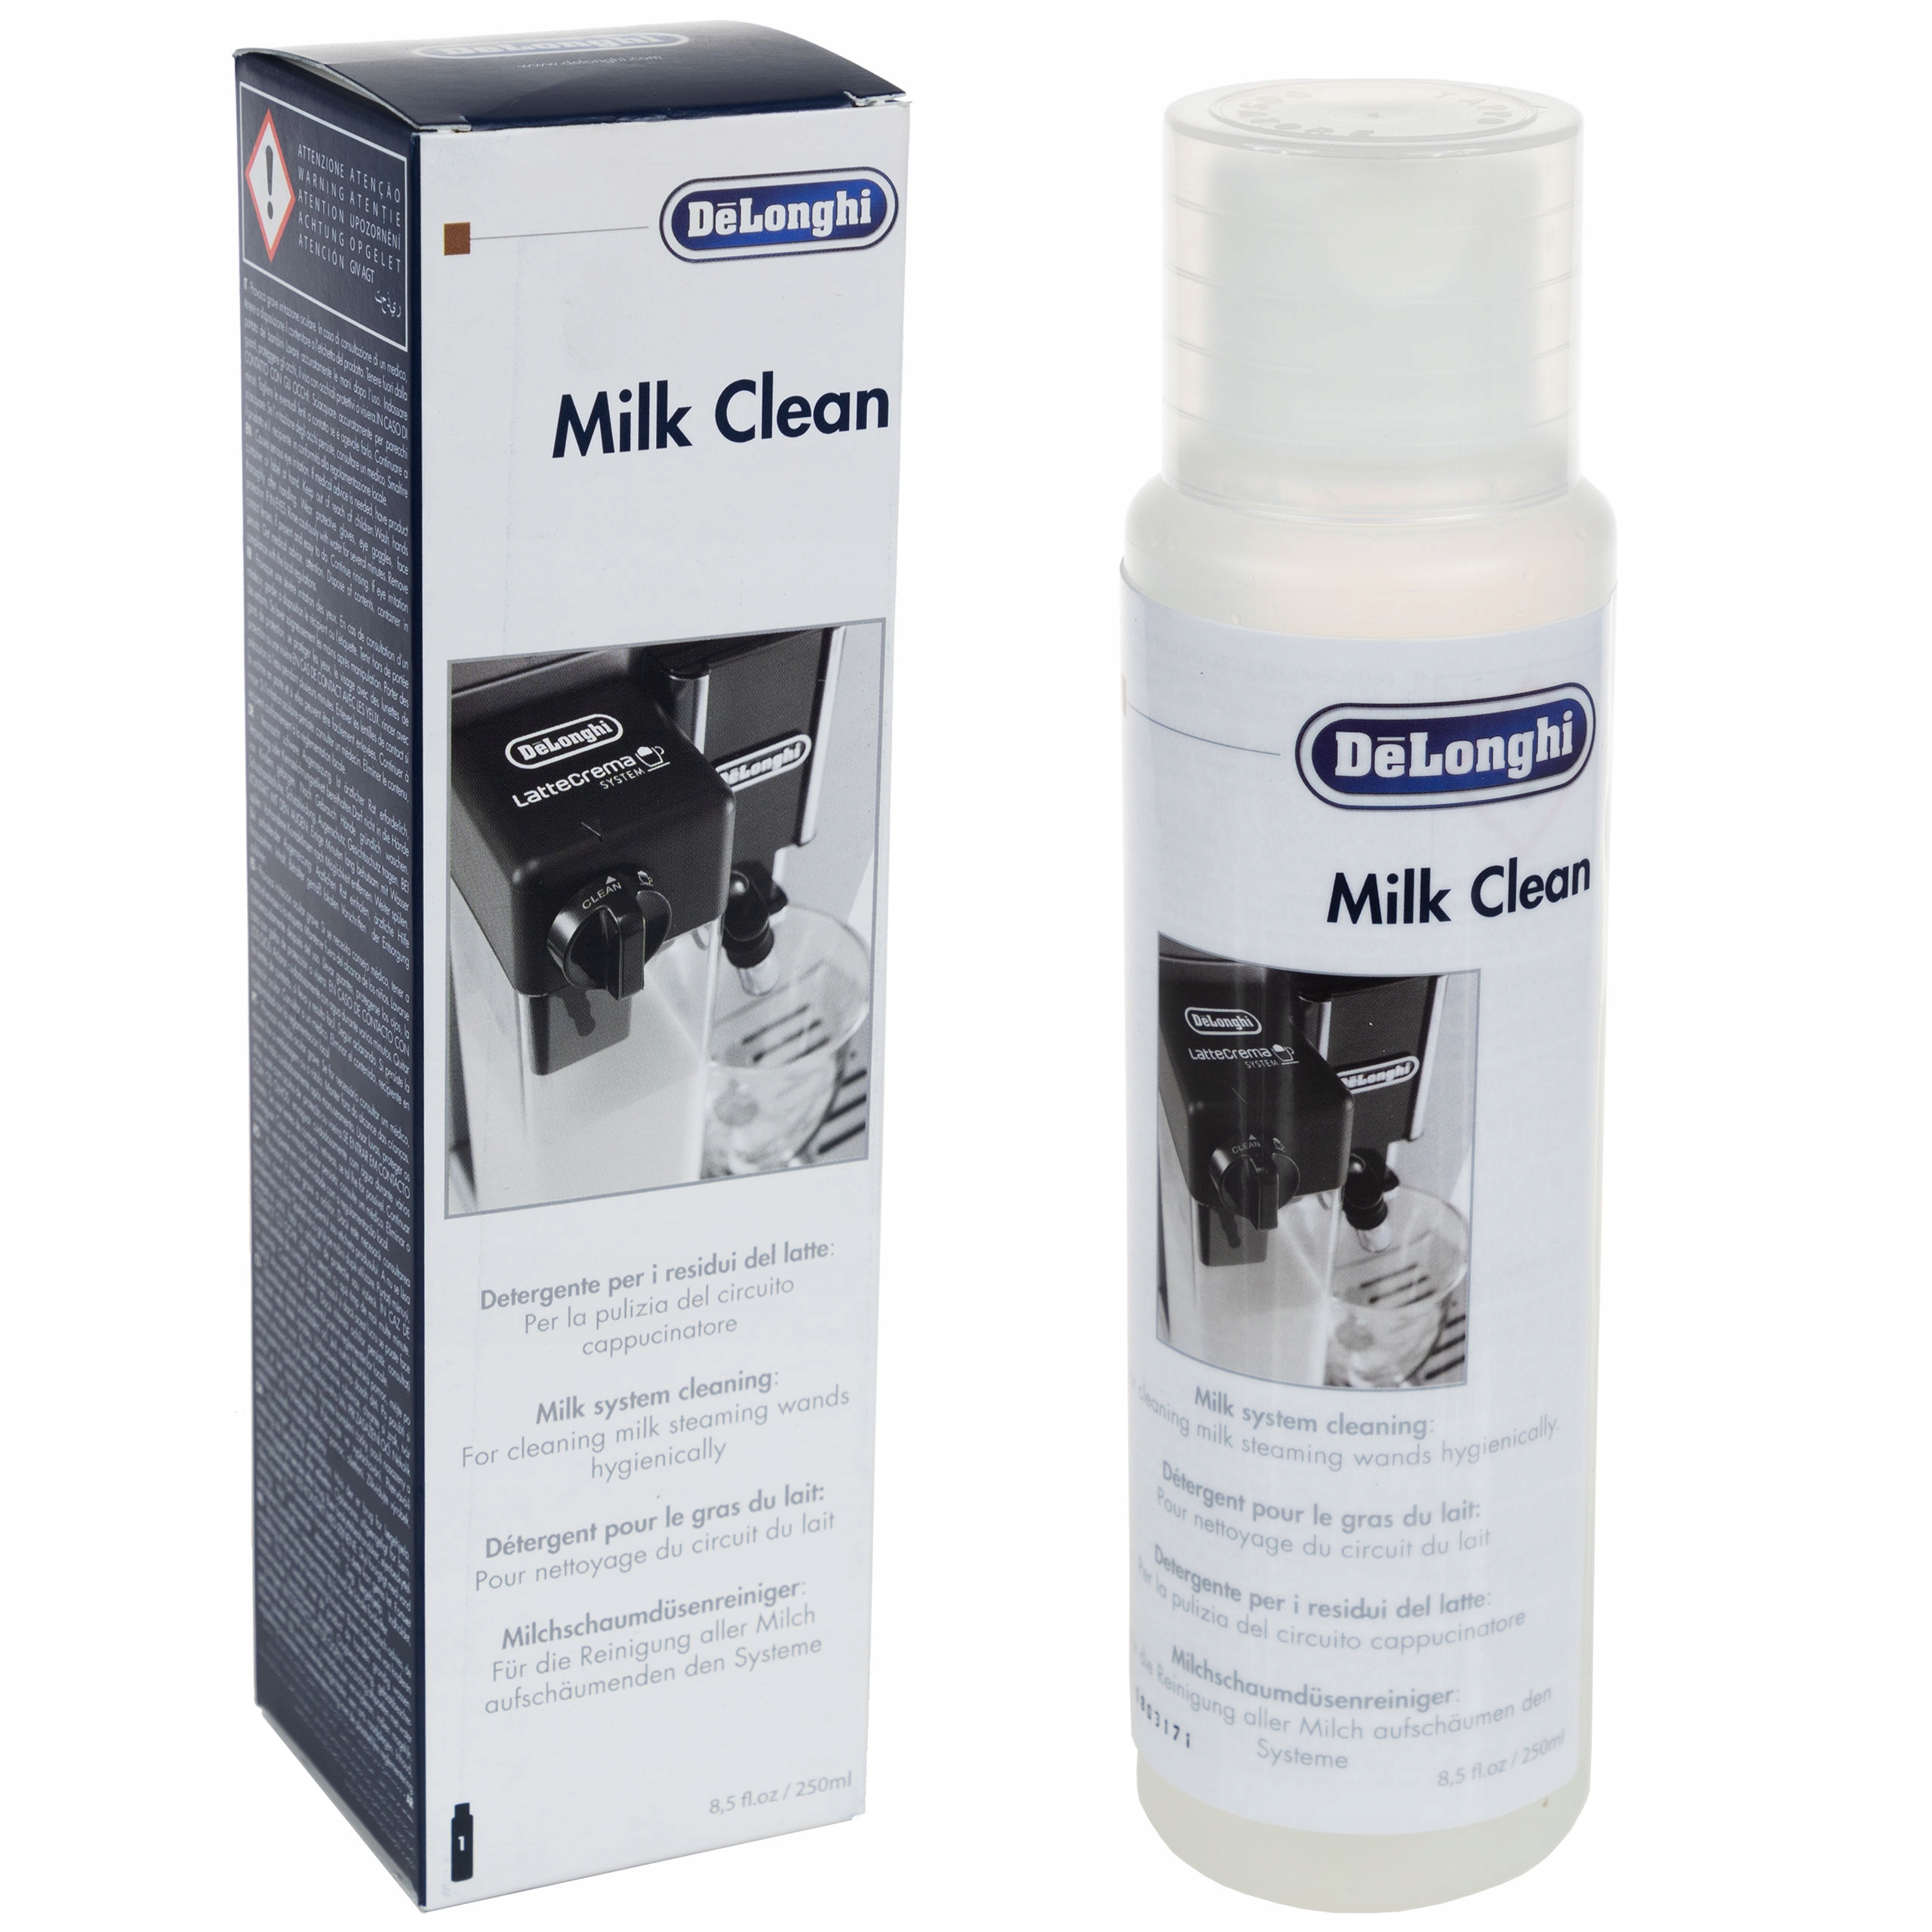 Milk clean. Delonghi Milk clean ser3013. Средство от накипи dlsc001 500мл Delonghi. Ser3013. Delonghi Cleaning 100 ml.